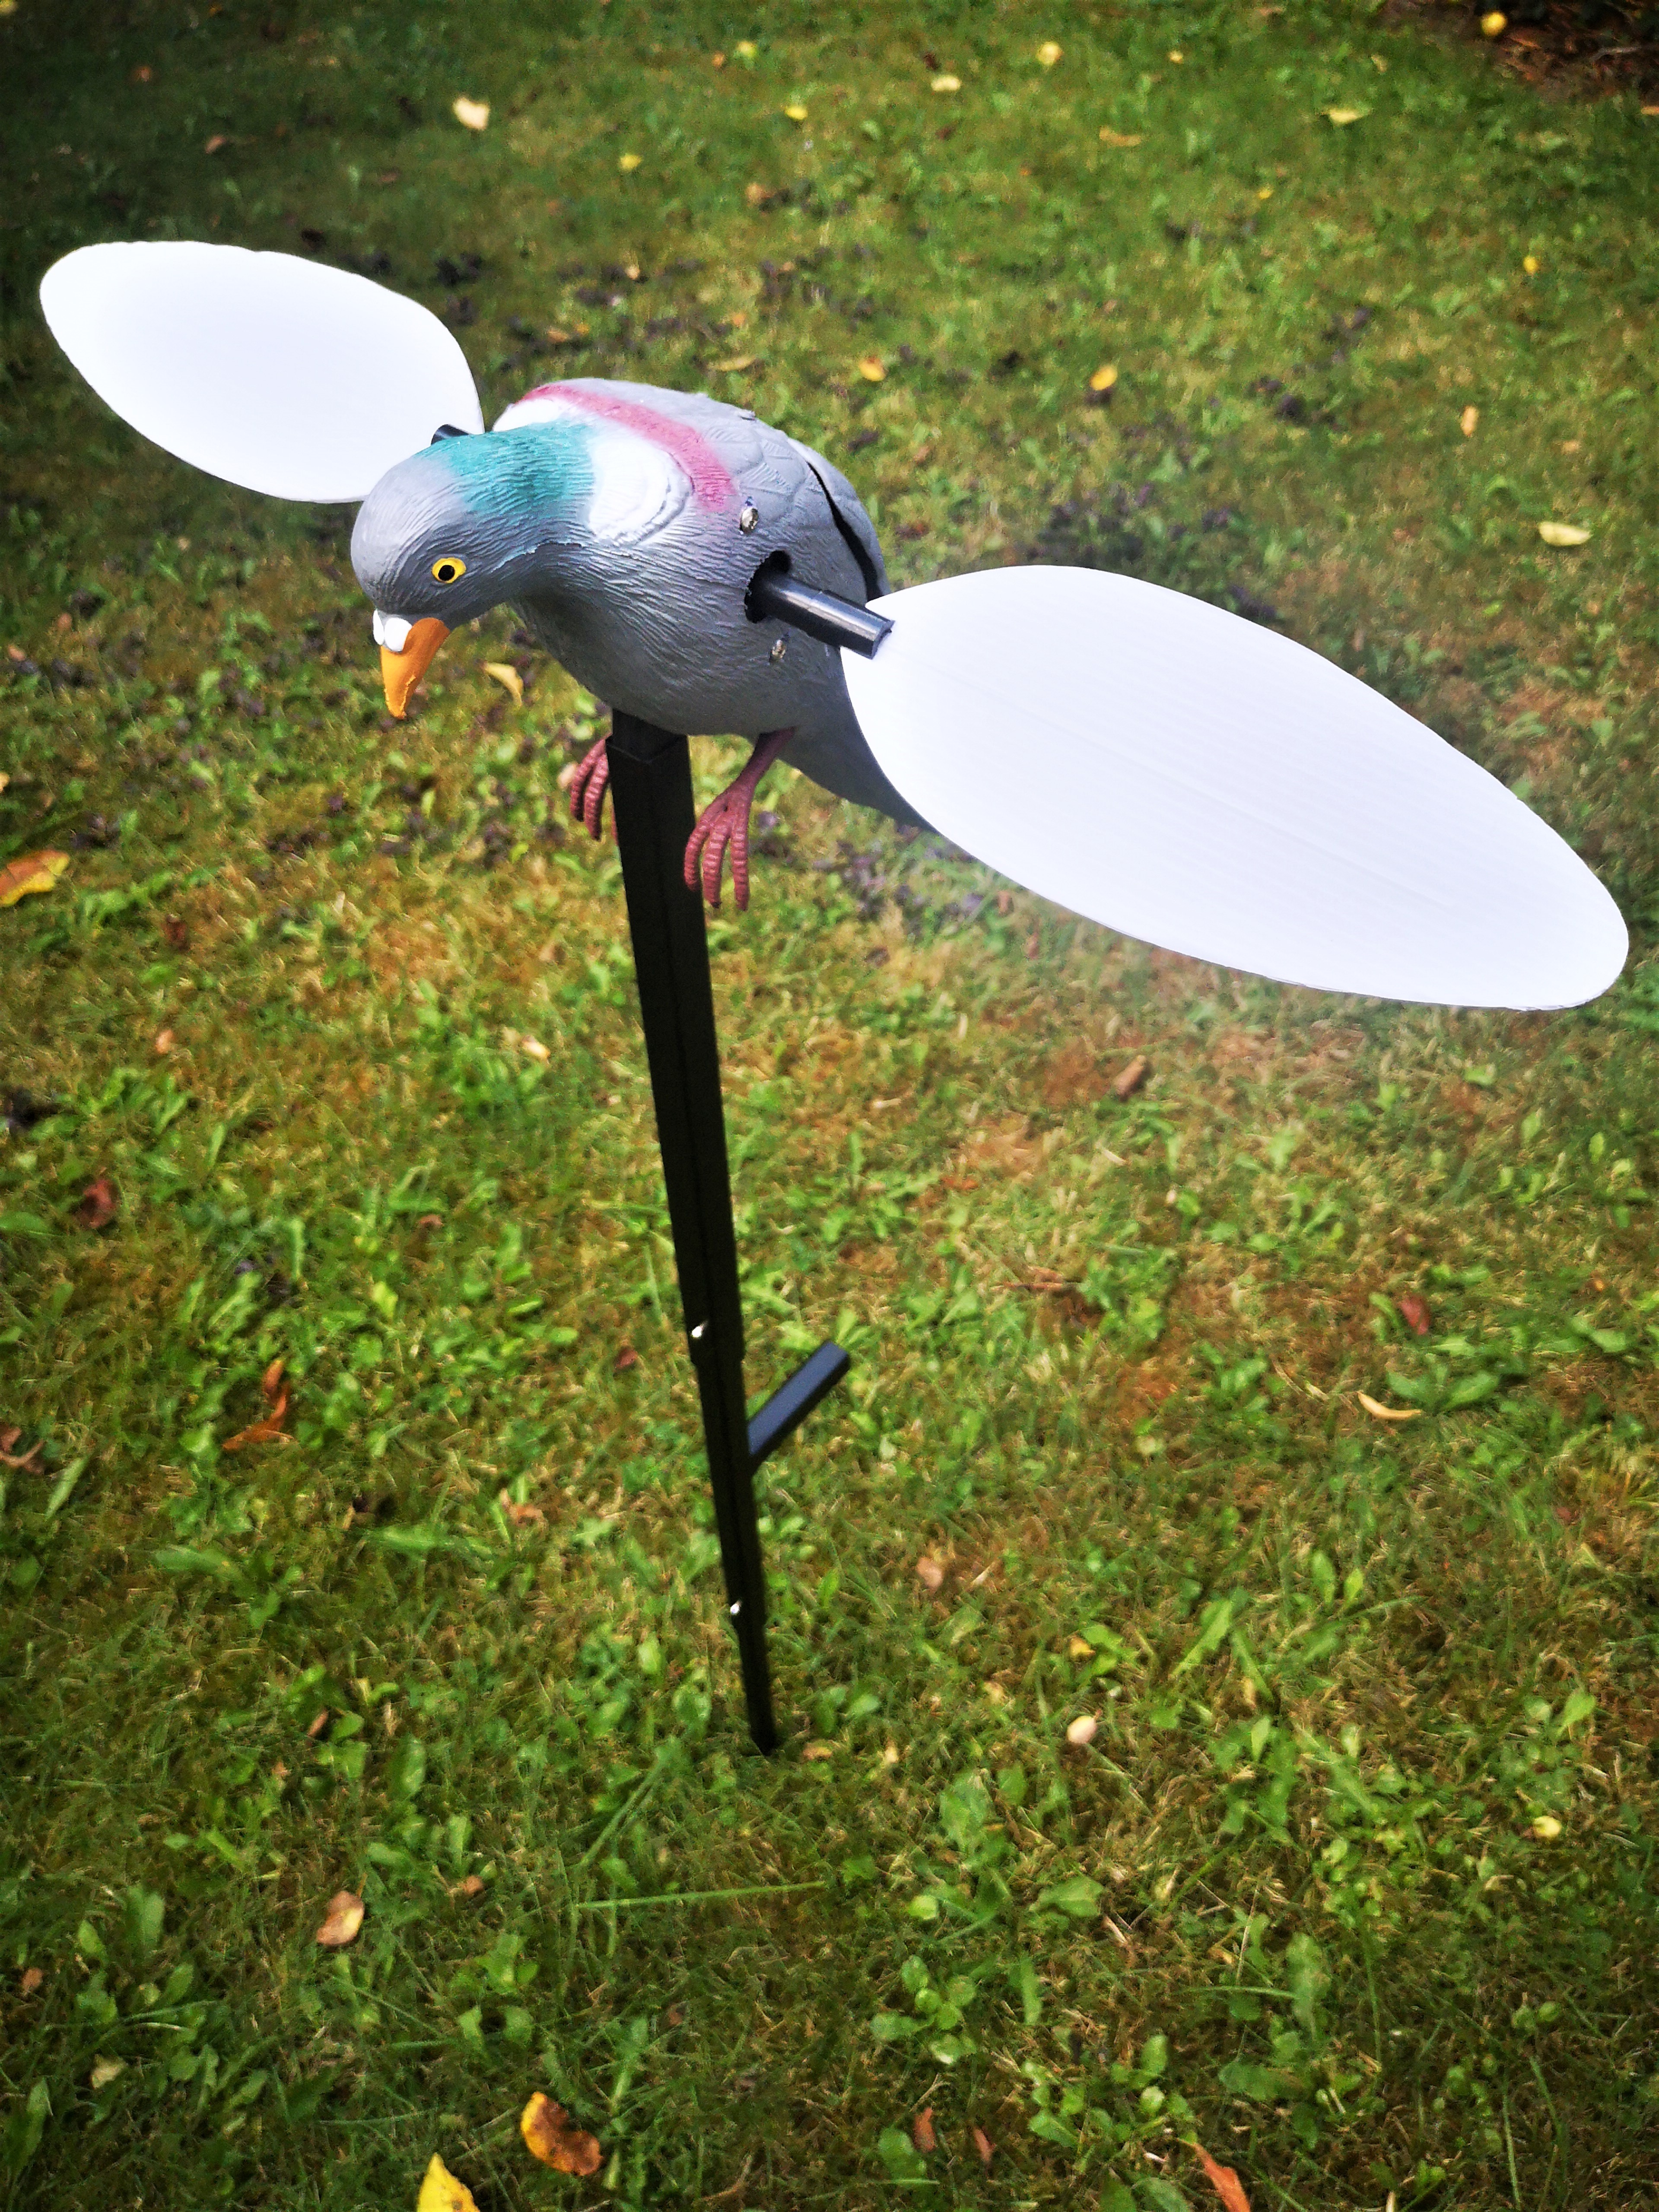 Die elektronische Locktaube Spinning Wing Pigeon ist auf der Taubenjagd die ideale Ergänzung eines Lockbilds. 